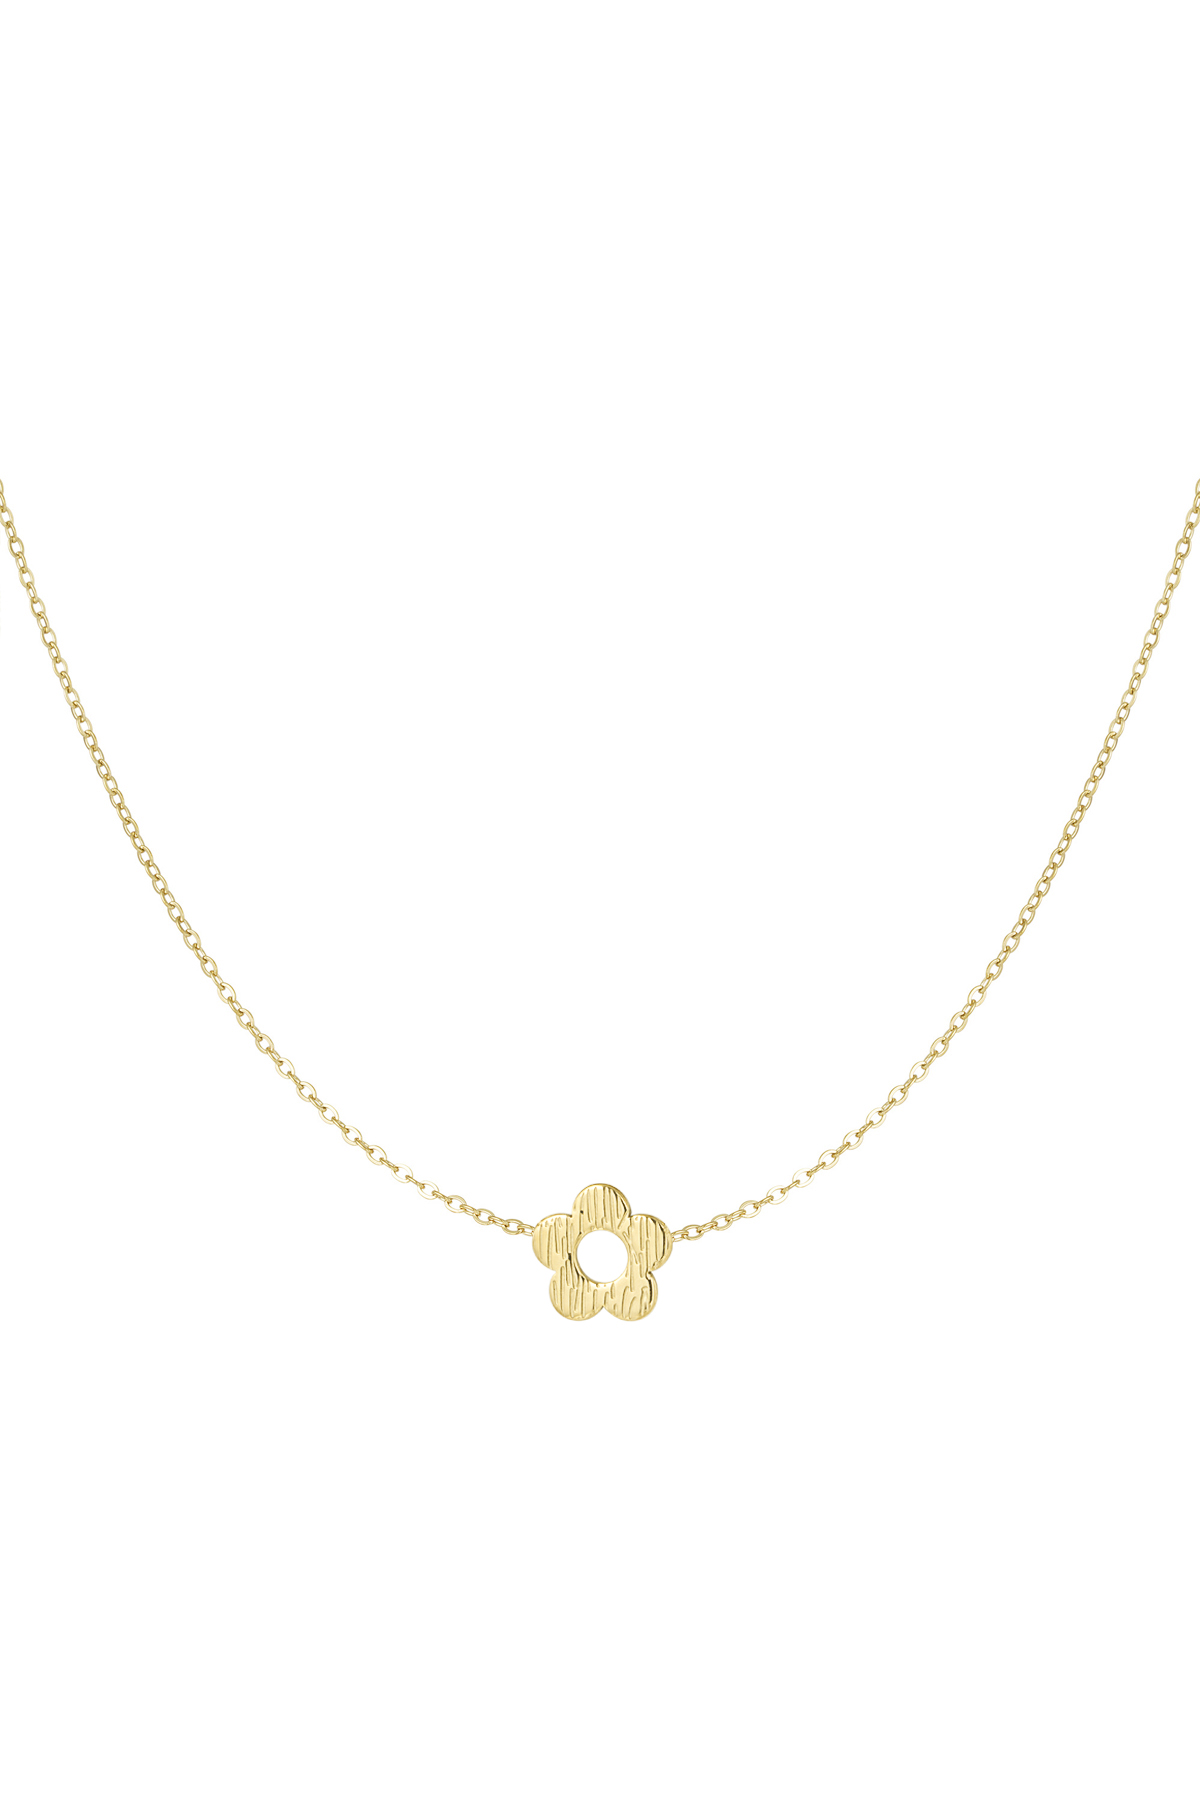 Spring flower necklace - gold